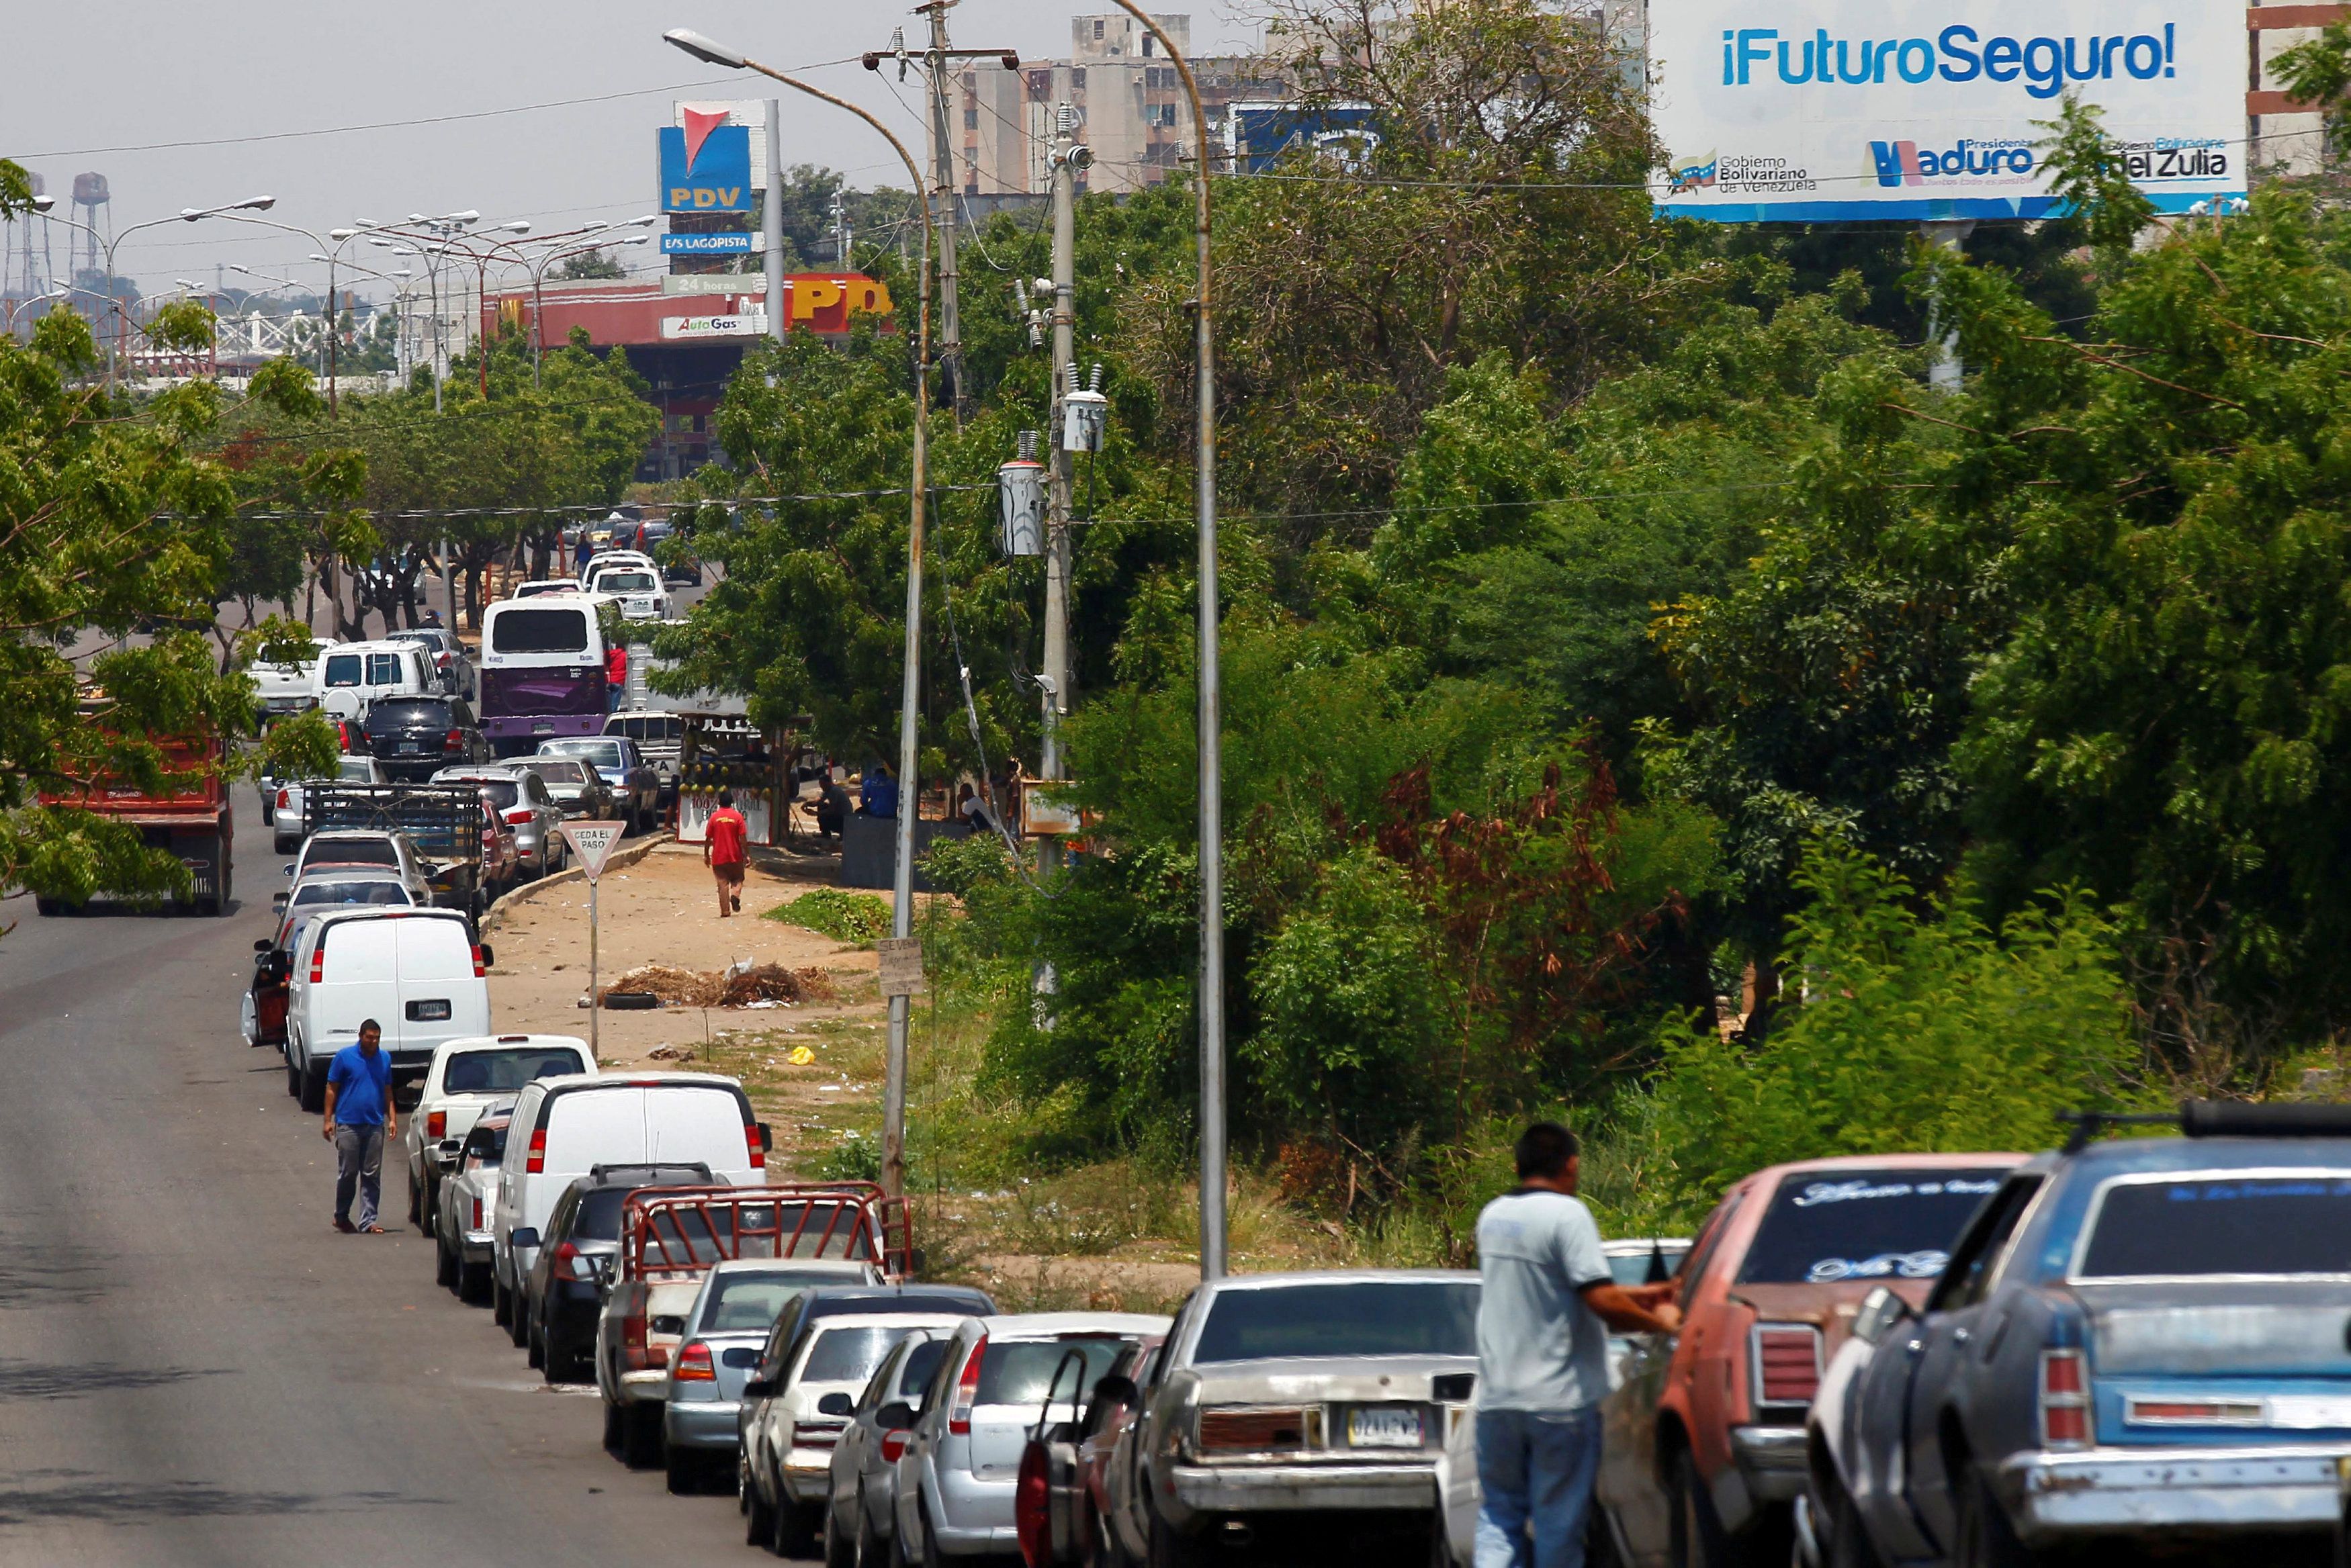 Trinidad y Tobago descartó enviar gasolina a Venezuela por temor a sanciones de EEUU